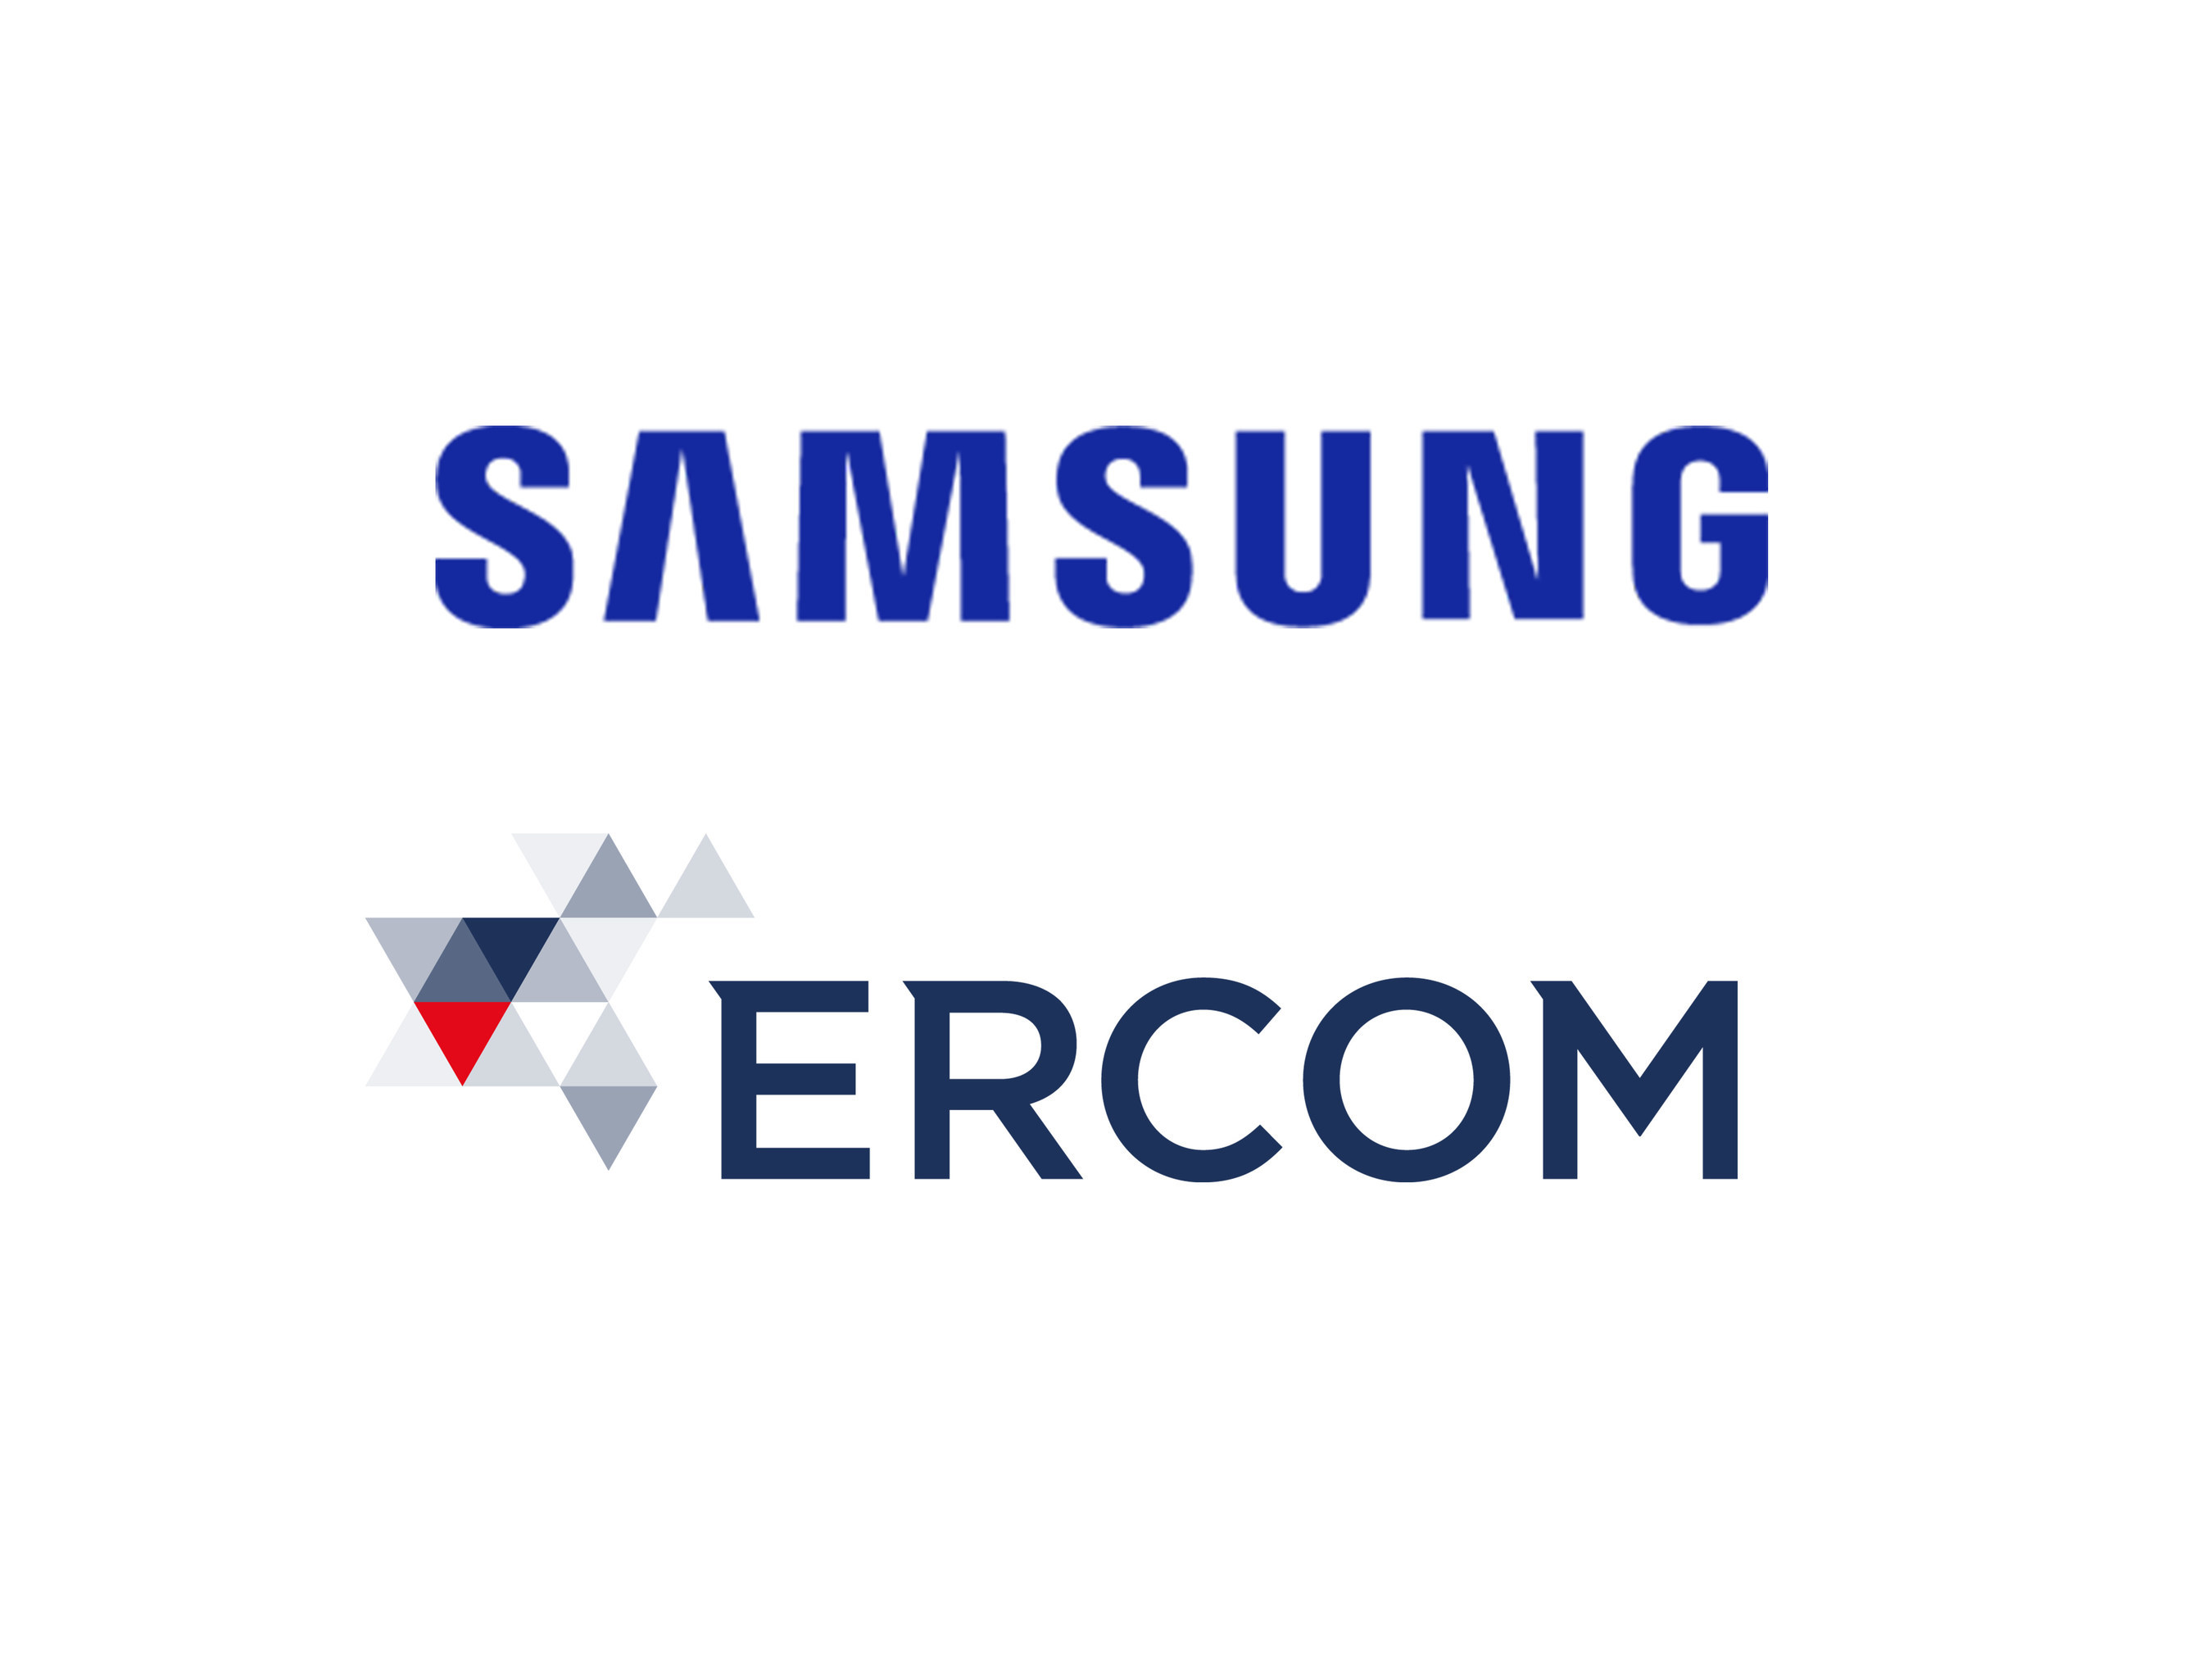 Samsung and Ercom logos